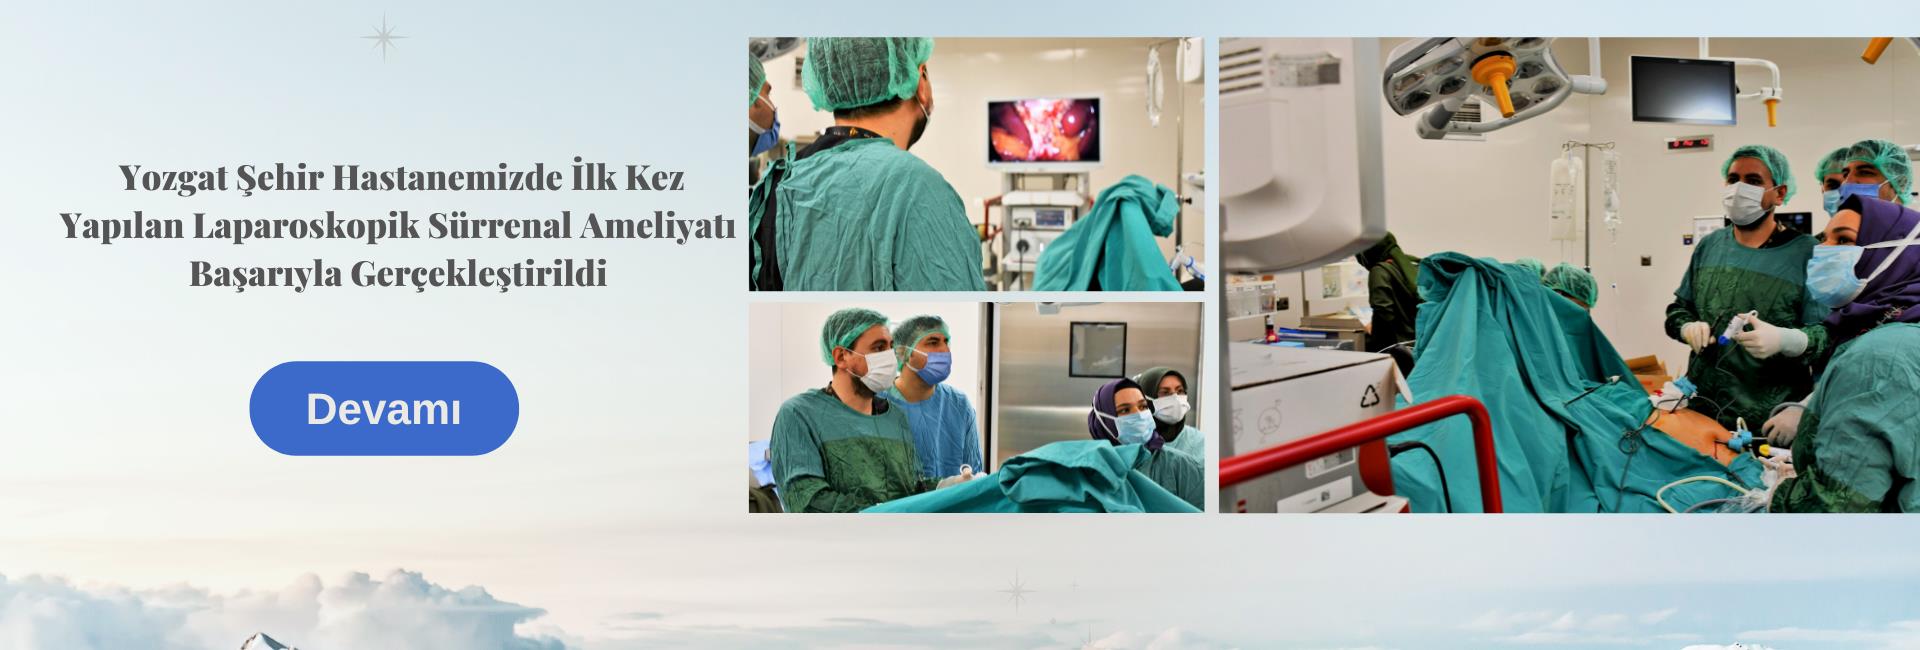 Yozgat Şehir Hastanemizde İlk Kez Yapılan Laparoskopik Sürrenal Ameliyatı Başarıyla Gerçekleştirildi